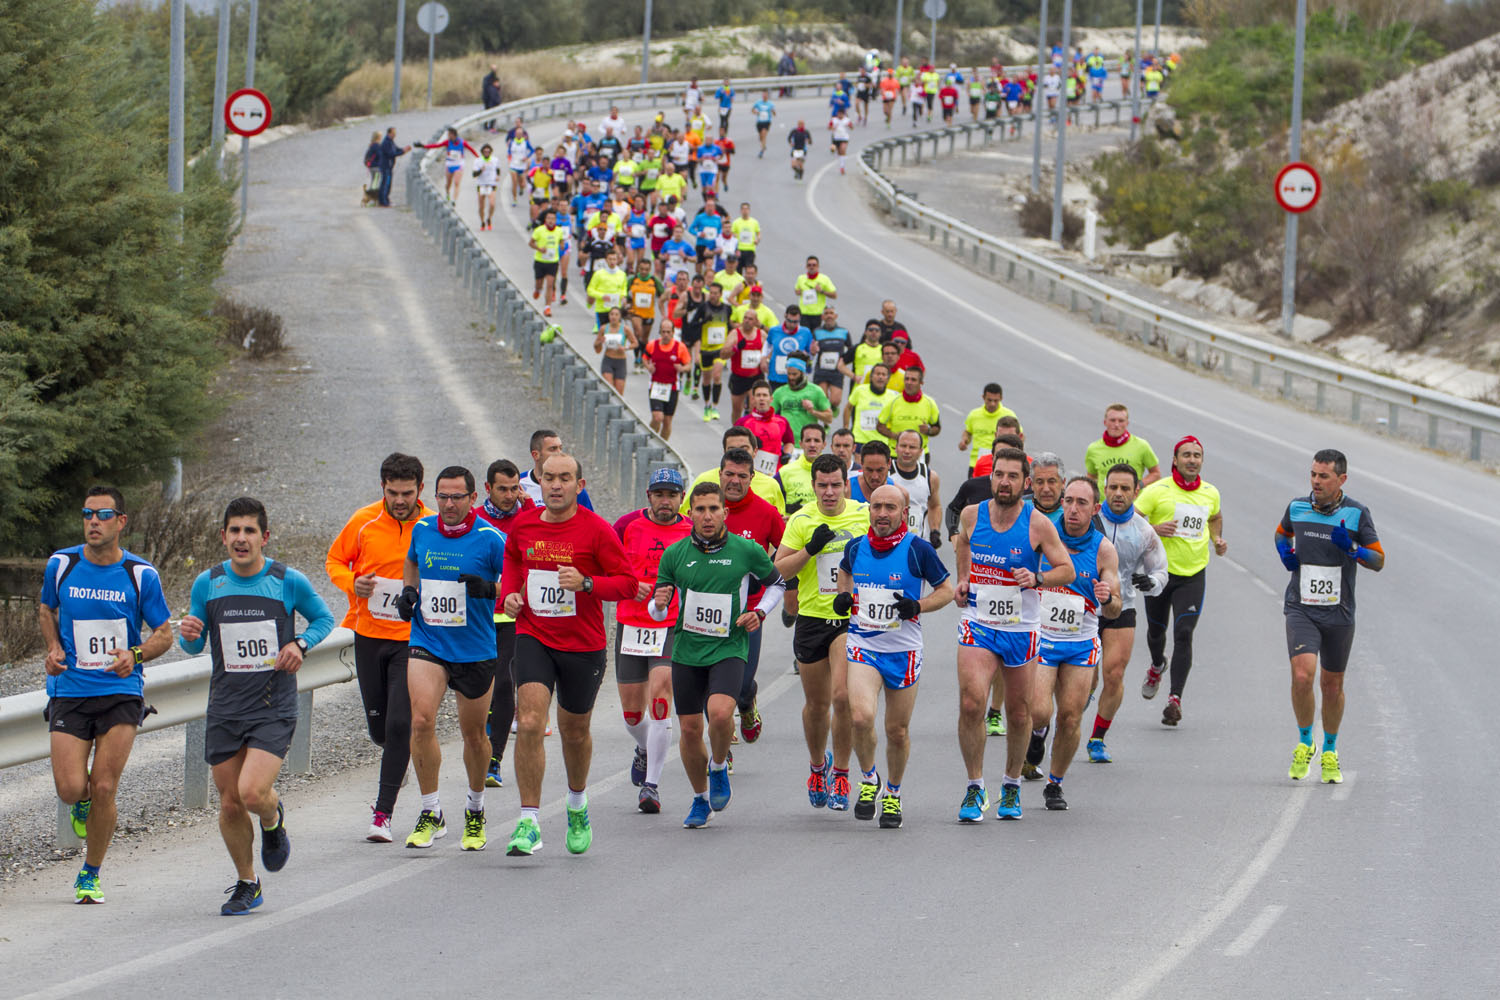 La Media Maratón Ciudad de Lucena concita 850 corredores en su séptima edición 1